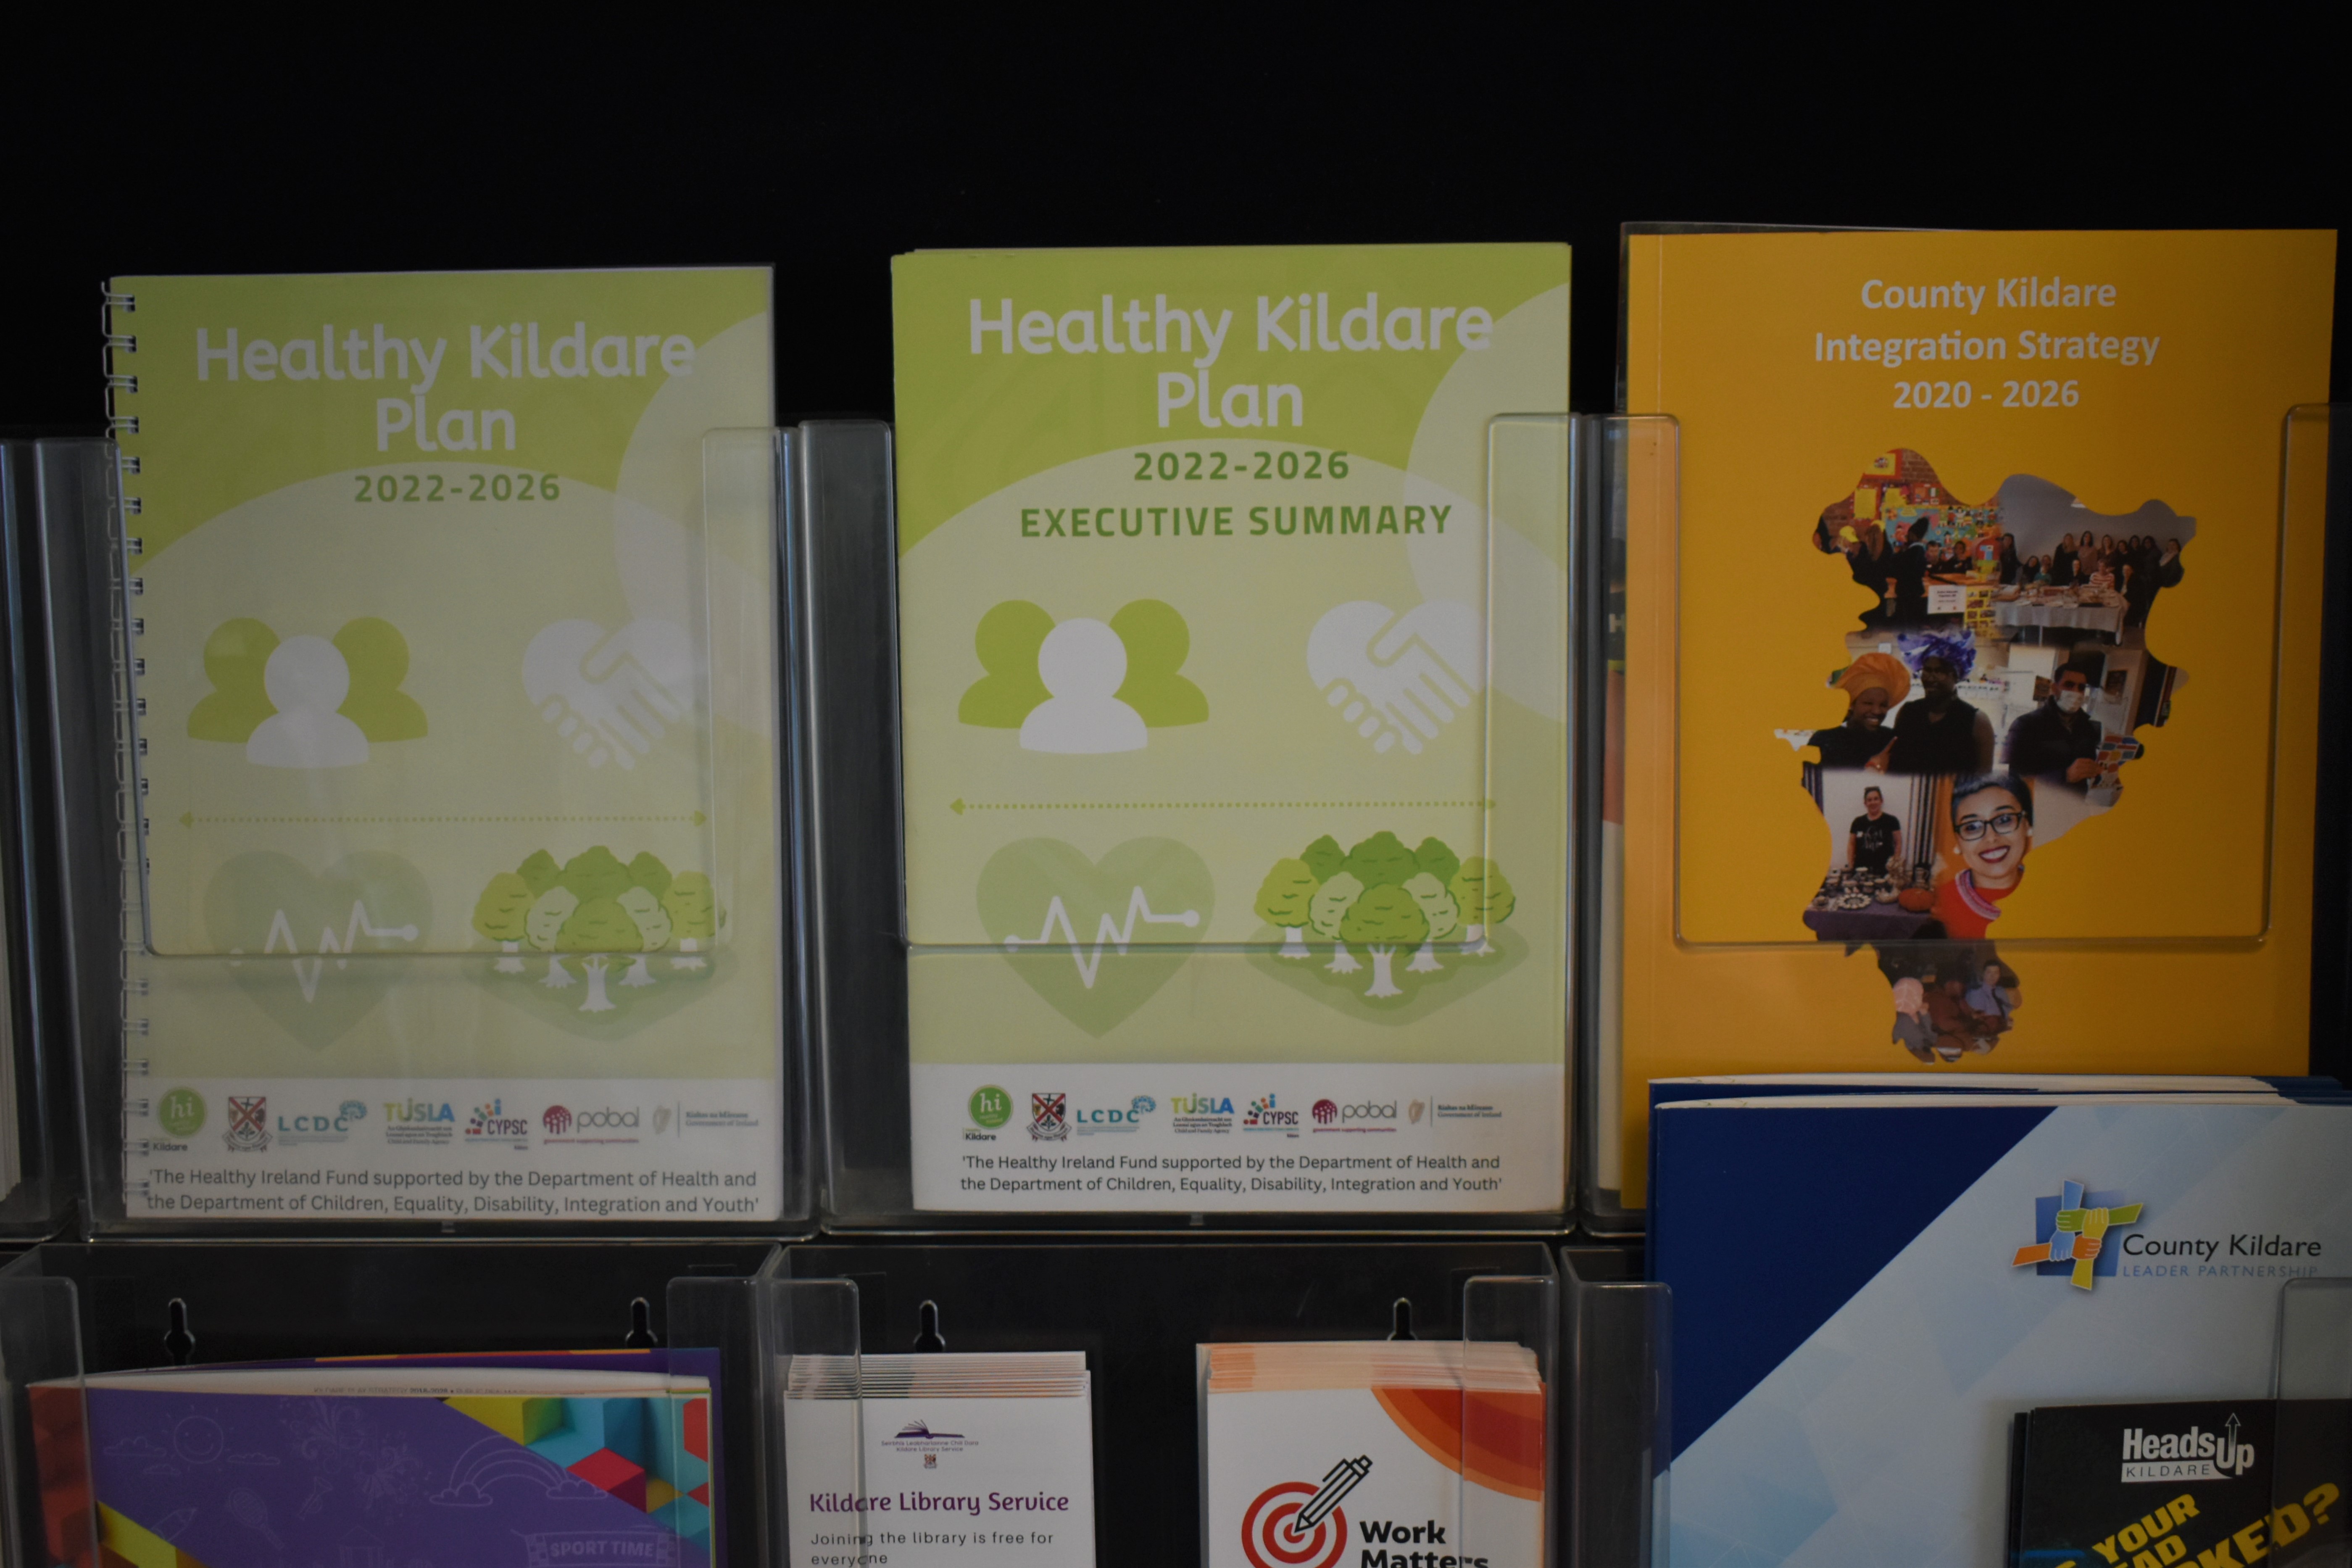 Healthy Kildare Plan 2022 - 2026